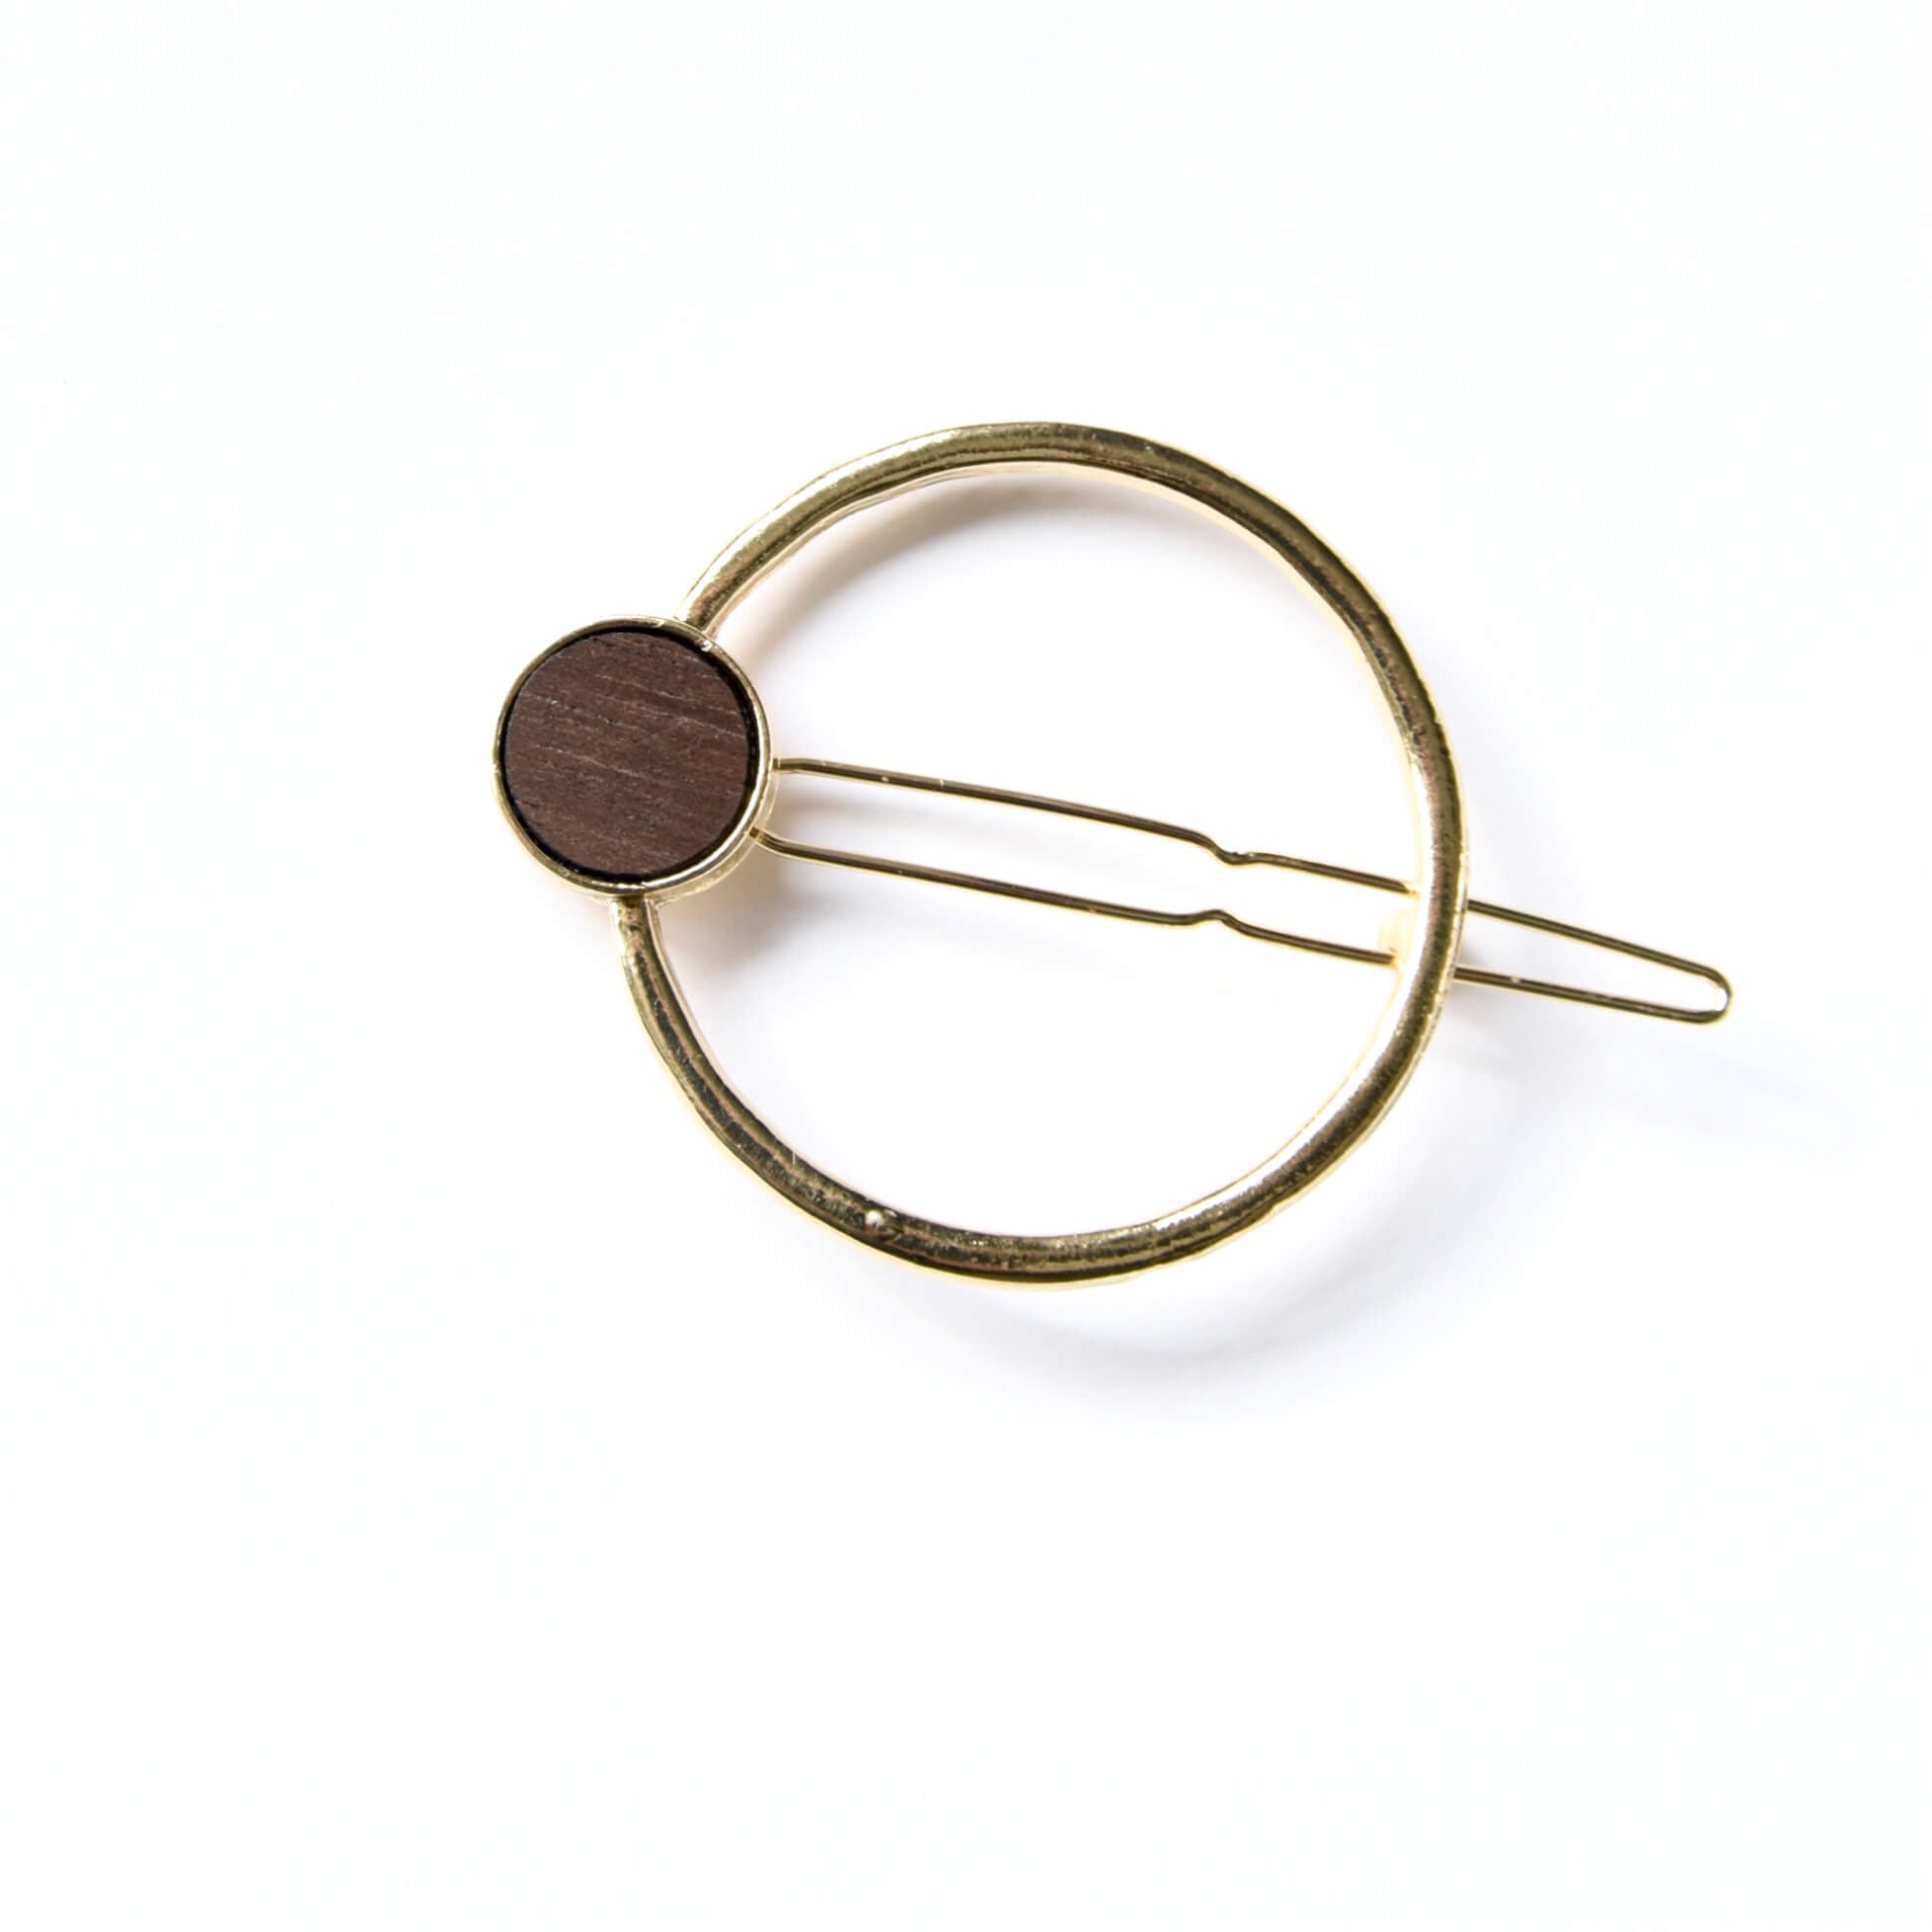 Barrette minimalist dorée - clip simple à cheveux en laiton - accessoire pour cheveux or